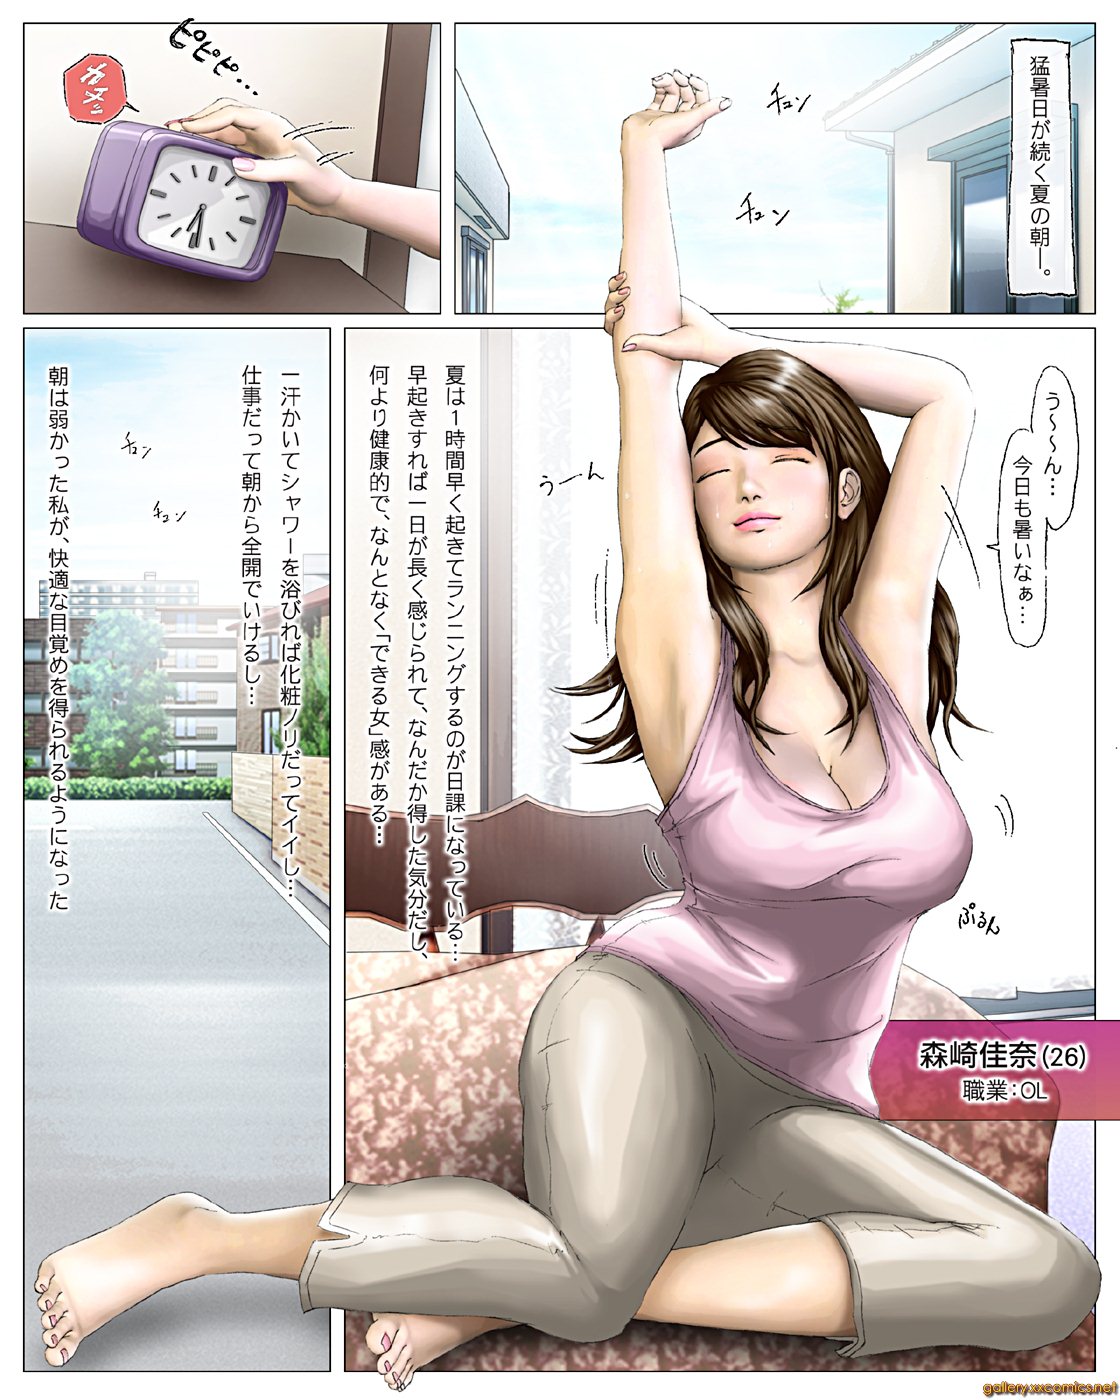 Japan porn comics